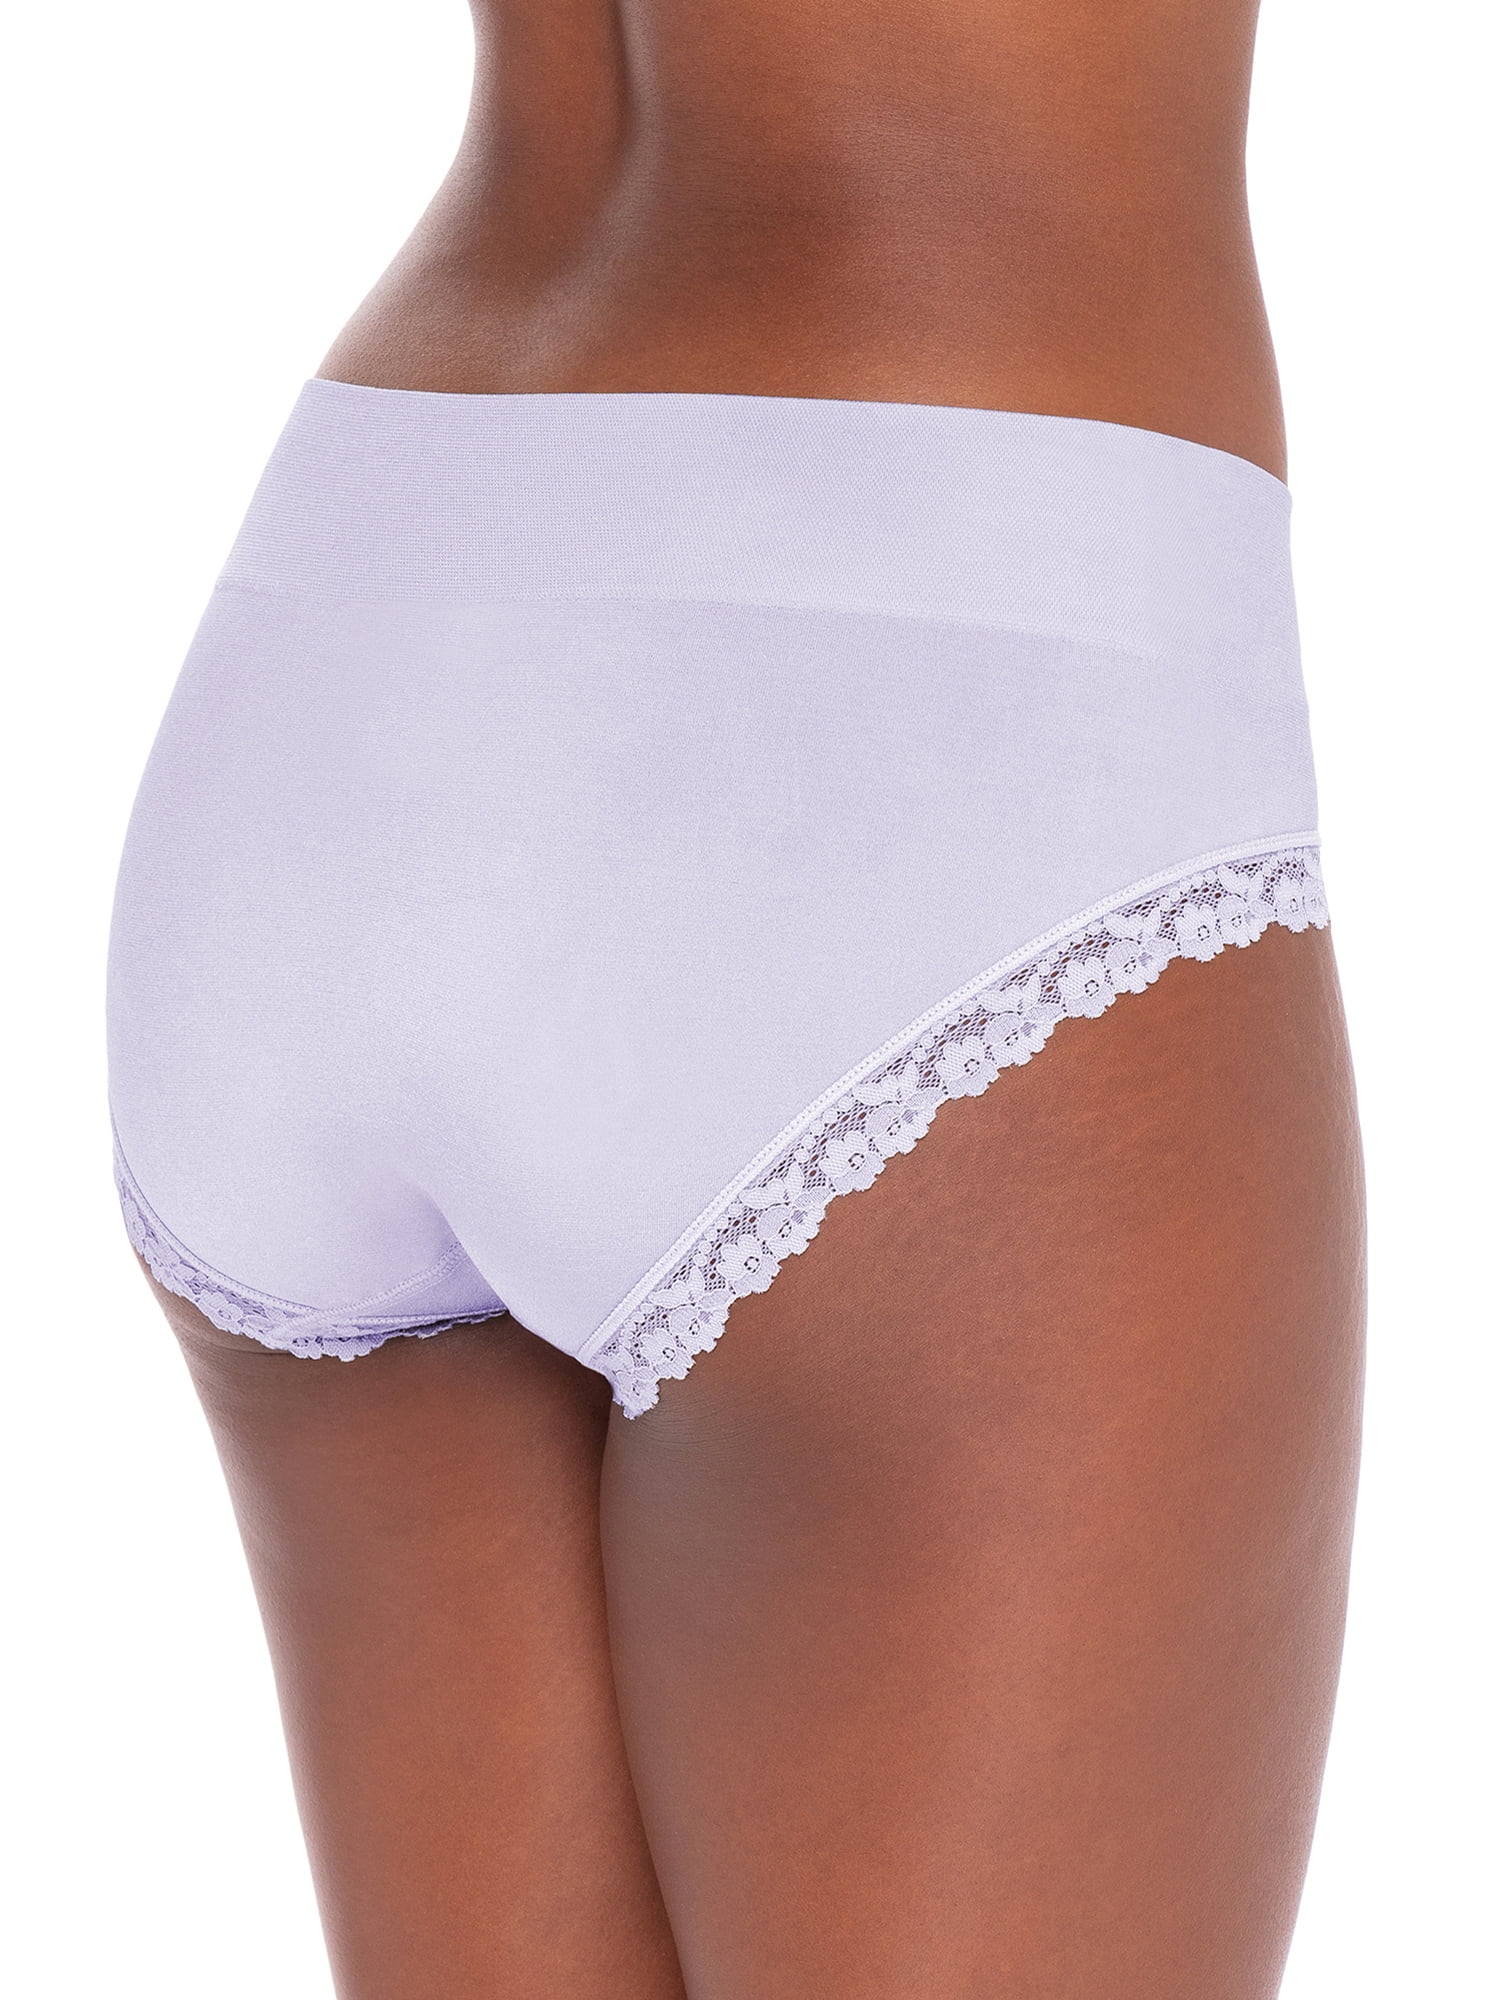 Secret Treasures Lace Briefs Nylon Spandex Panty (Women's) 4 Pack